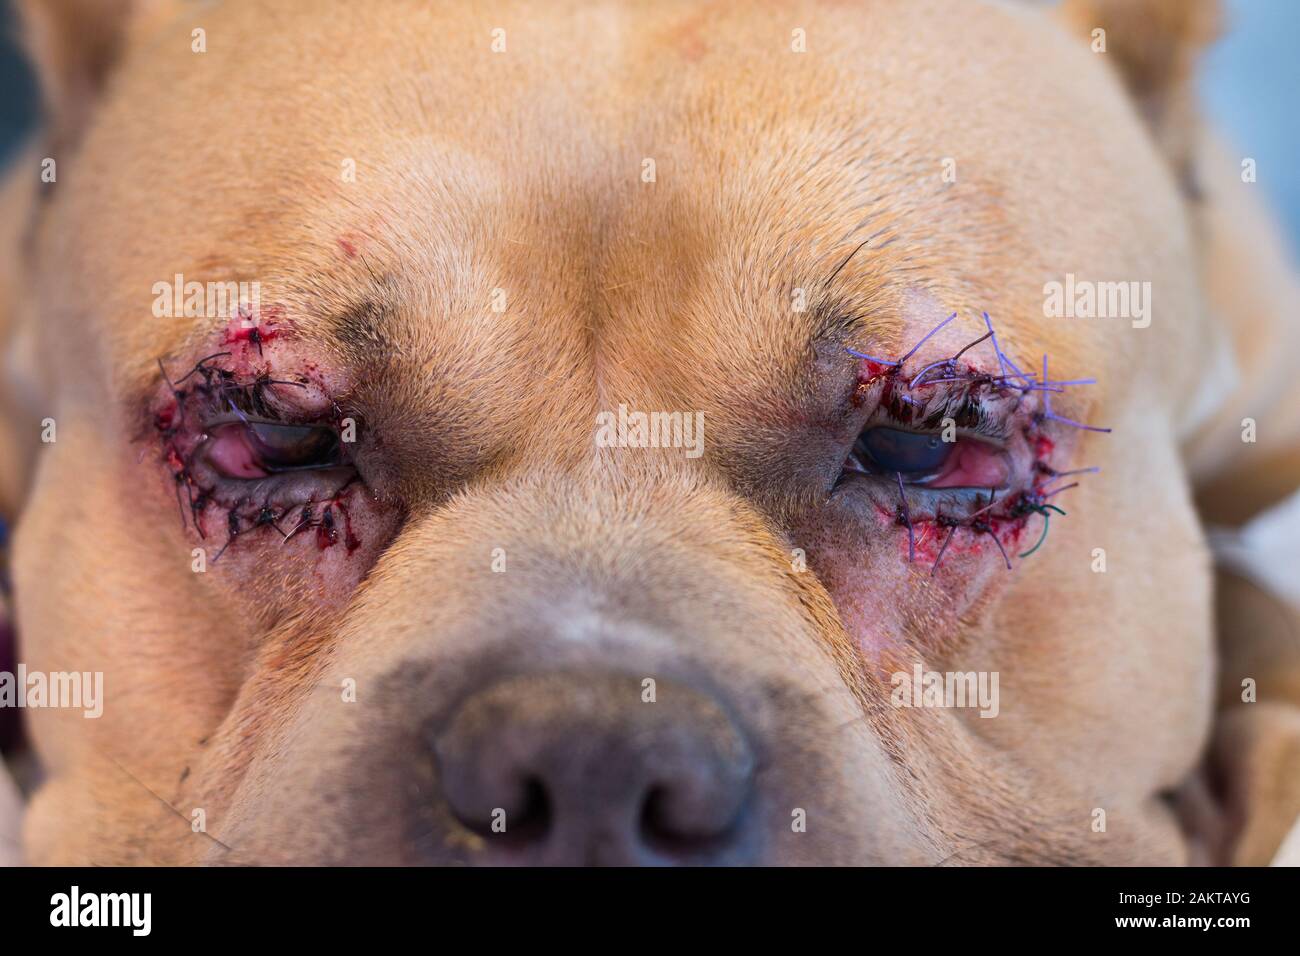 Amerikanischer Bully-Hund brütet nach der Operation mit Entropion und  Hornhautgeschwür Stockfotografie - Alamy